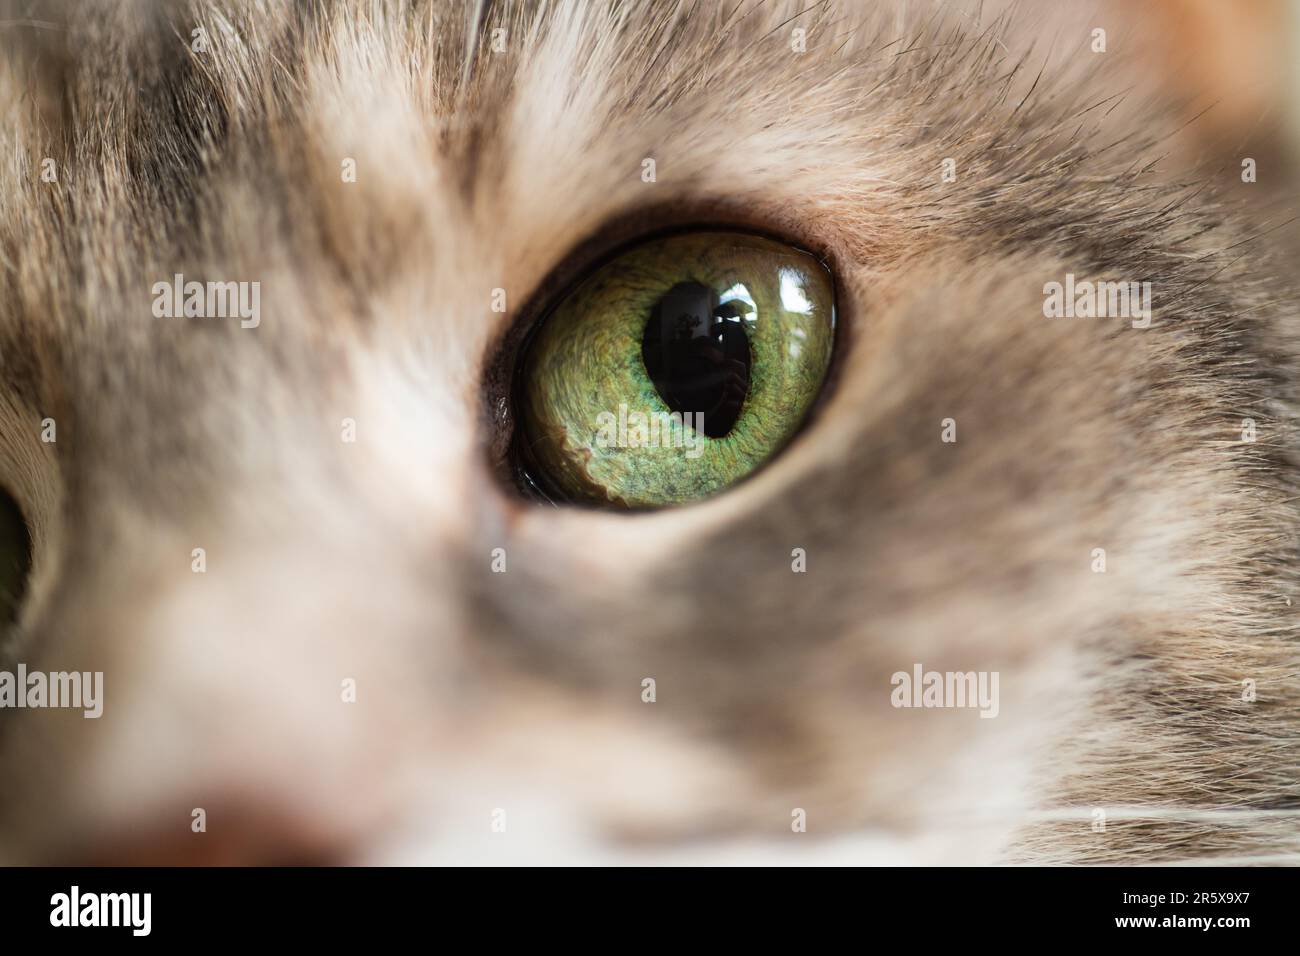 Macro photographie d'un shorthair domestique diluer l'oeil de chat de maison de torbie avec un iris vert et un pupille dilaté Banque D'Images